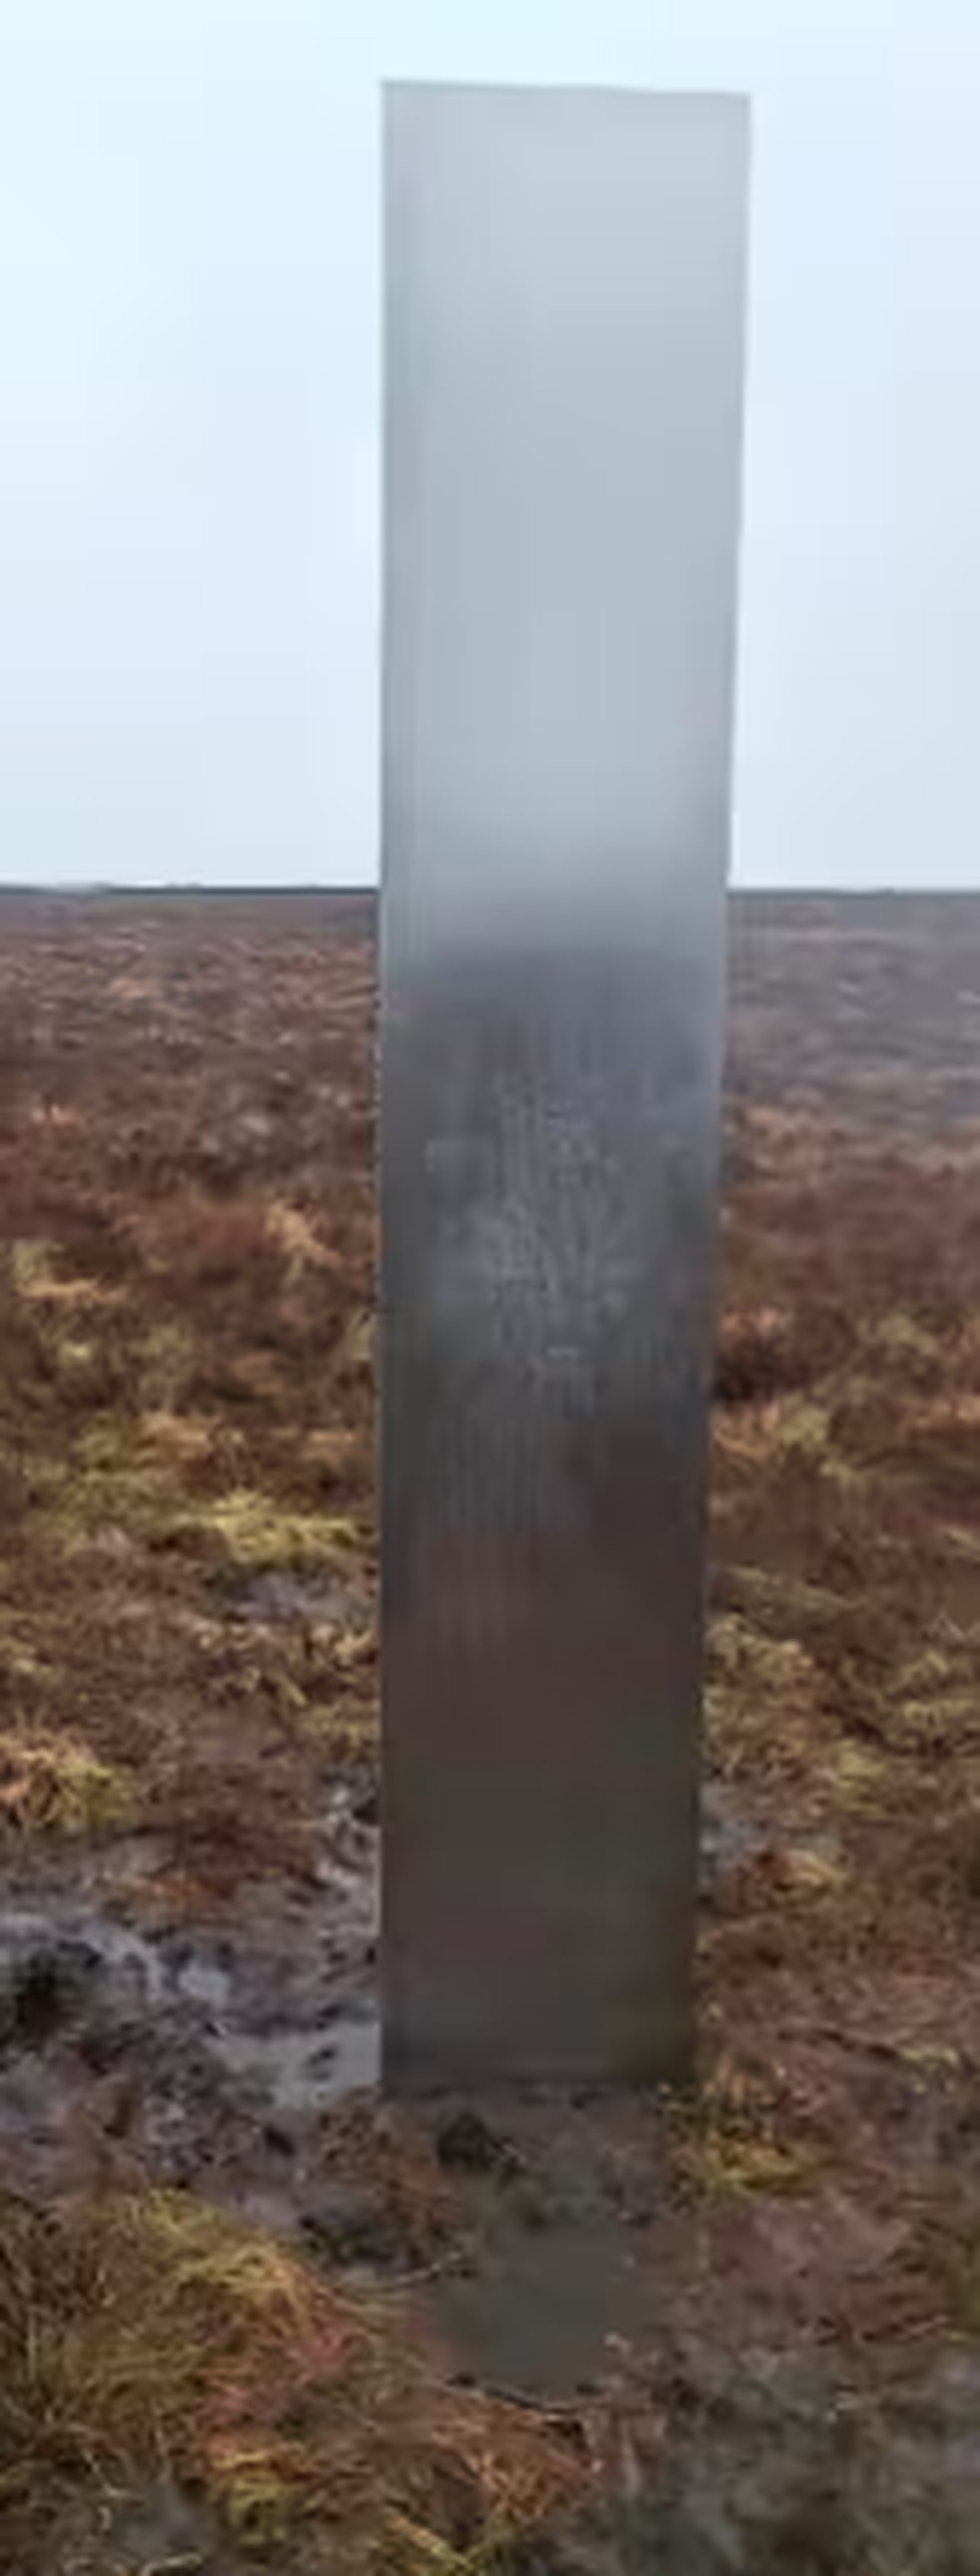 Aparentemente feito de aço, monumento foi encontrado por morador do País de Gales durante caminhada por área montanhosa. — Foto: Reprodução/ Redes sociais